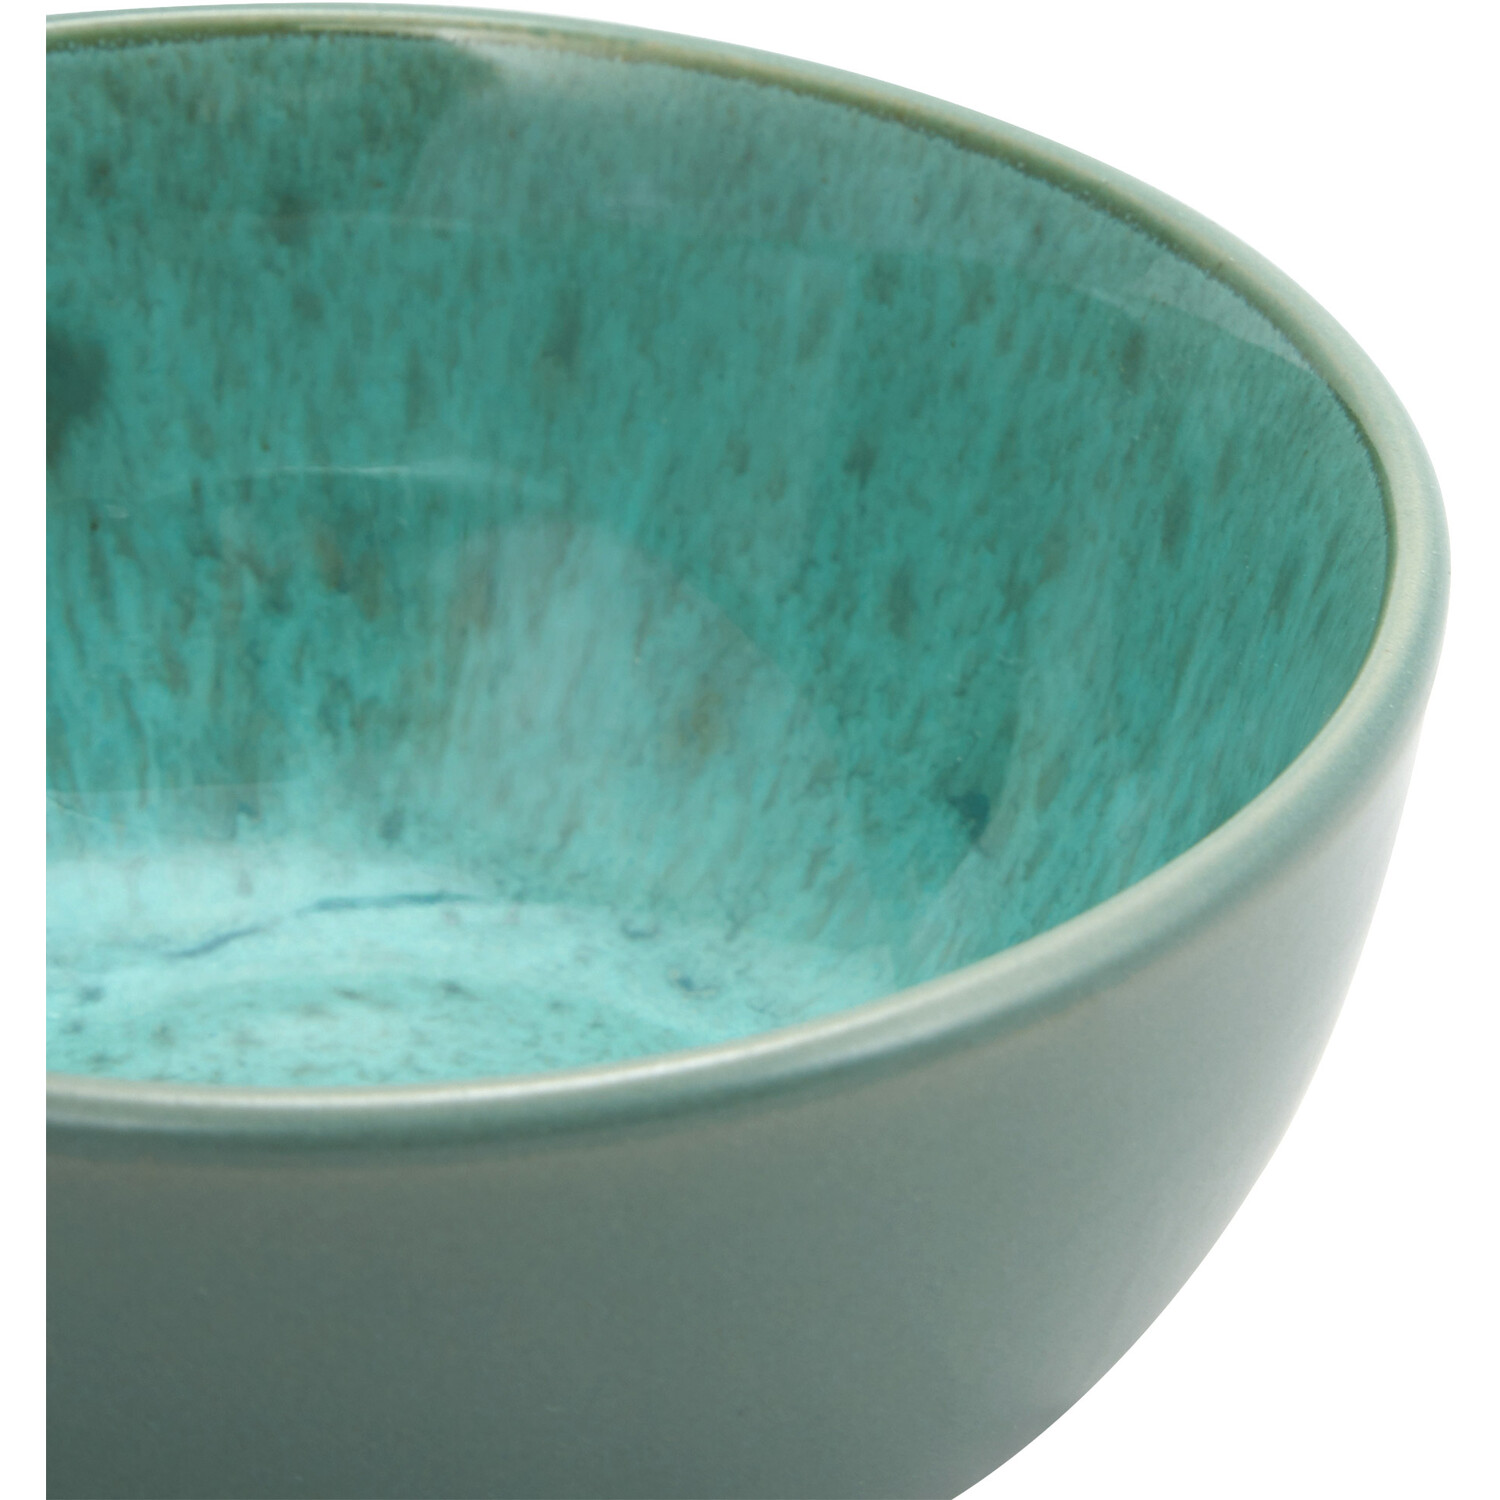 Salvie Reactive Glaze Nibbles Bowl - Sea Green Image 2